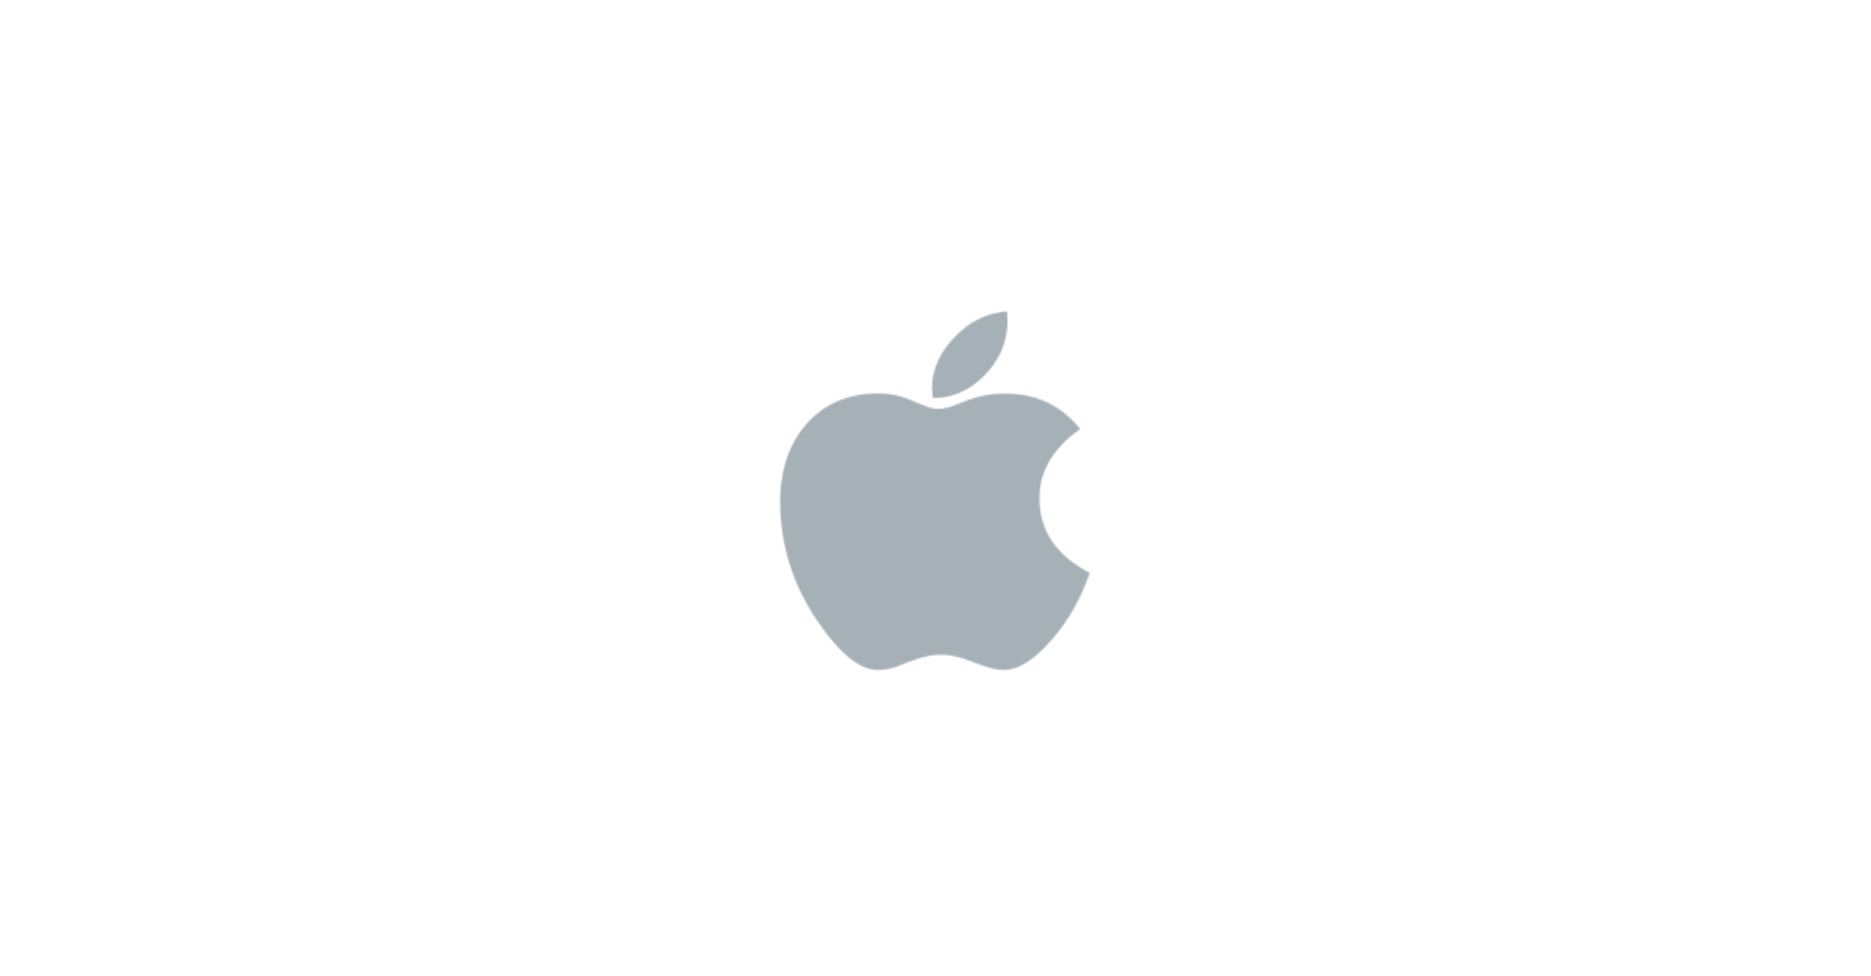 Apple มีจำนวนผู้สมัครสมาชิกเพิ่มขึ้นถึง 165 ล้านรายในปีที่ผ่านมา